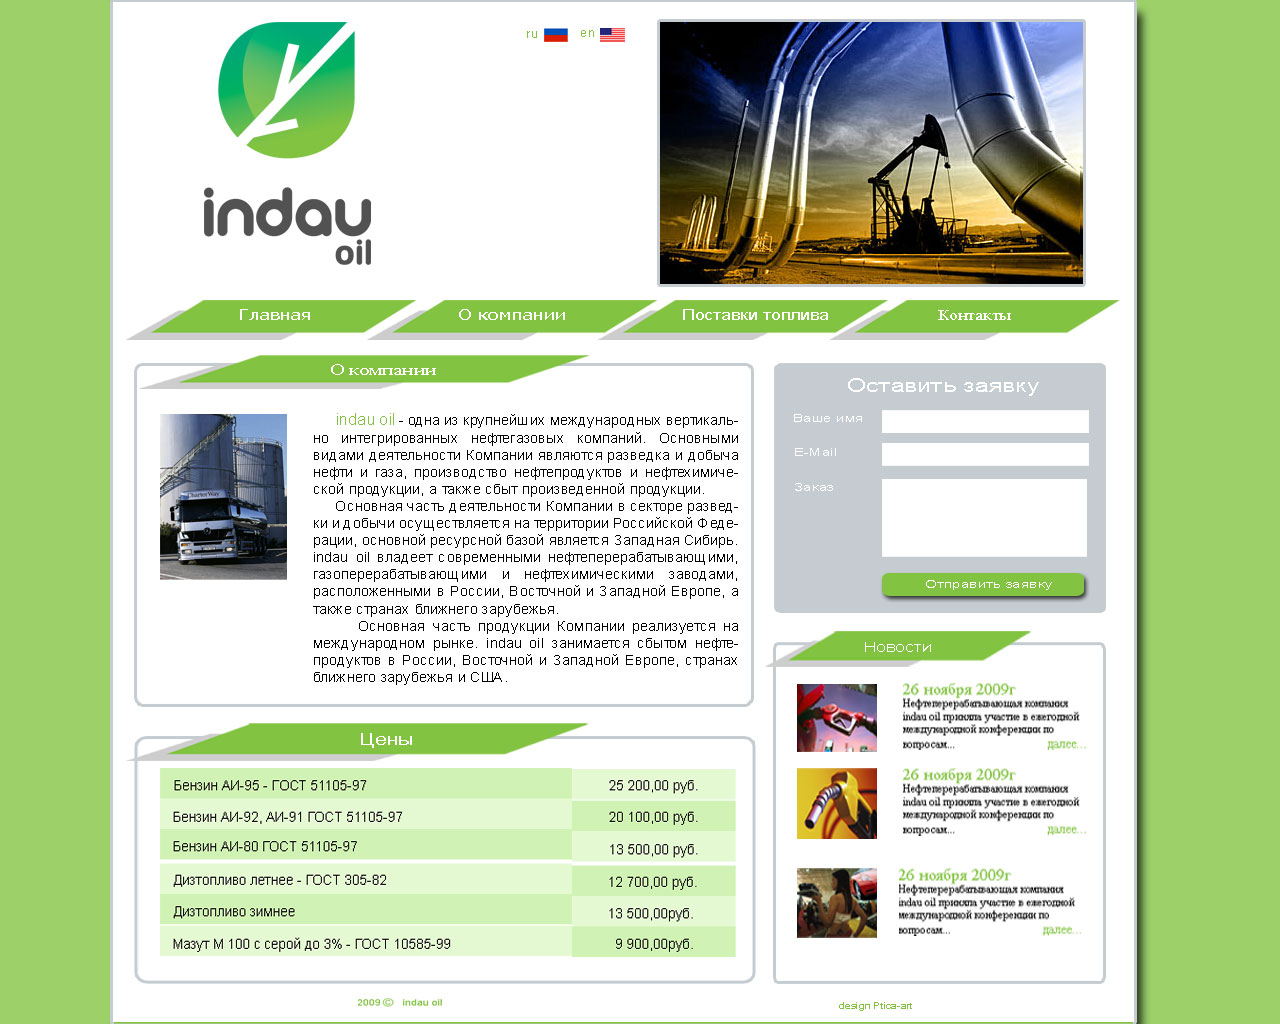 Нефтеперерабатывающая компания indau oil